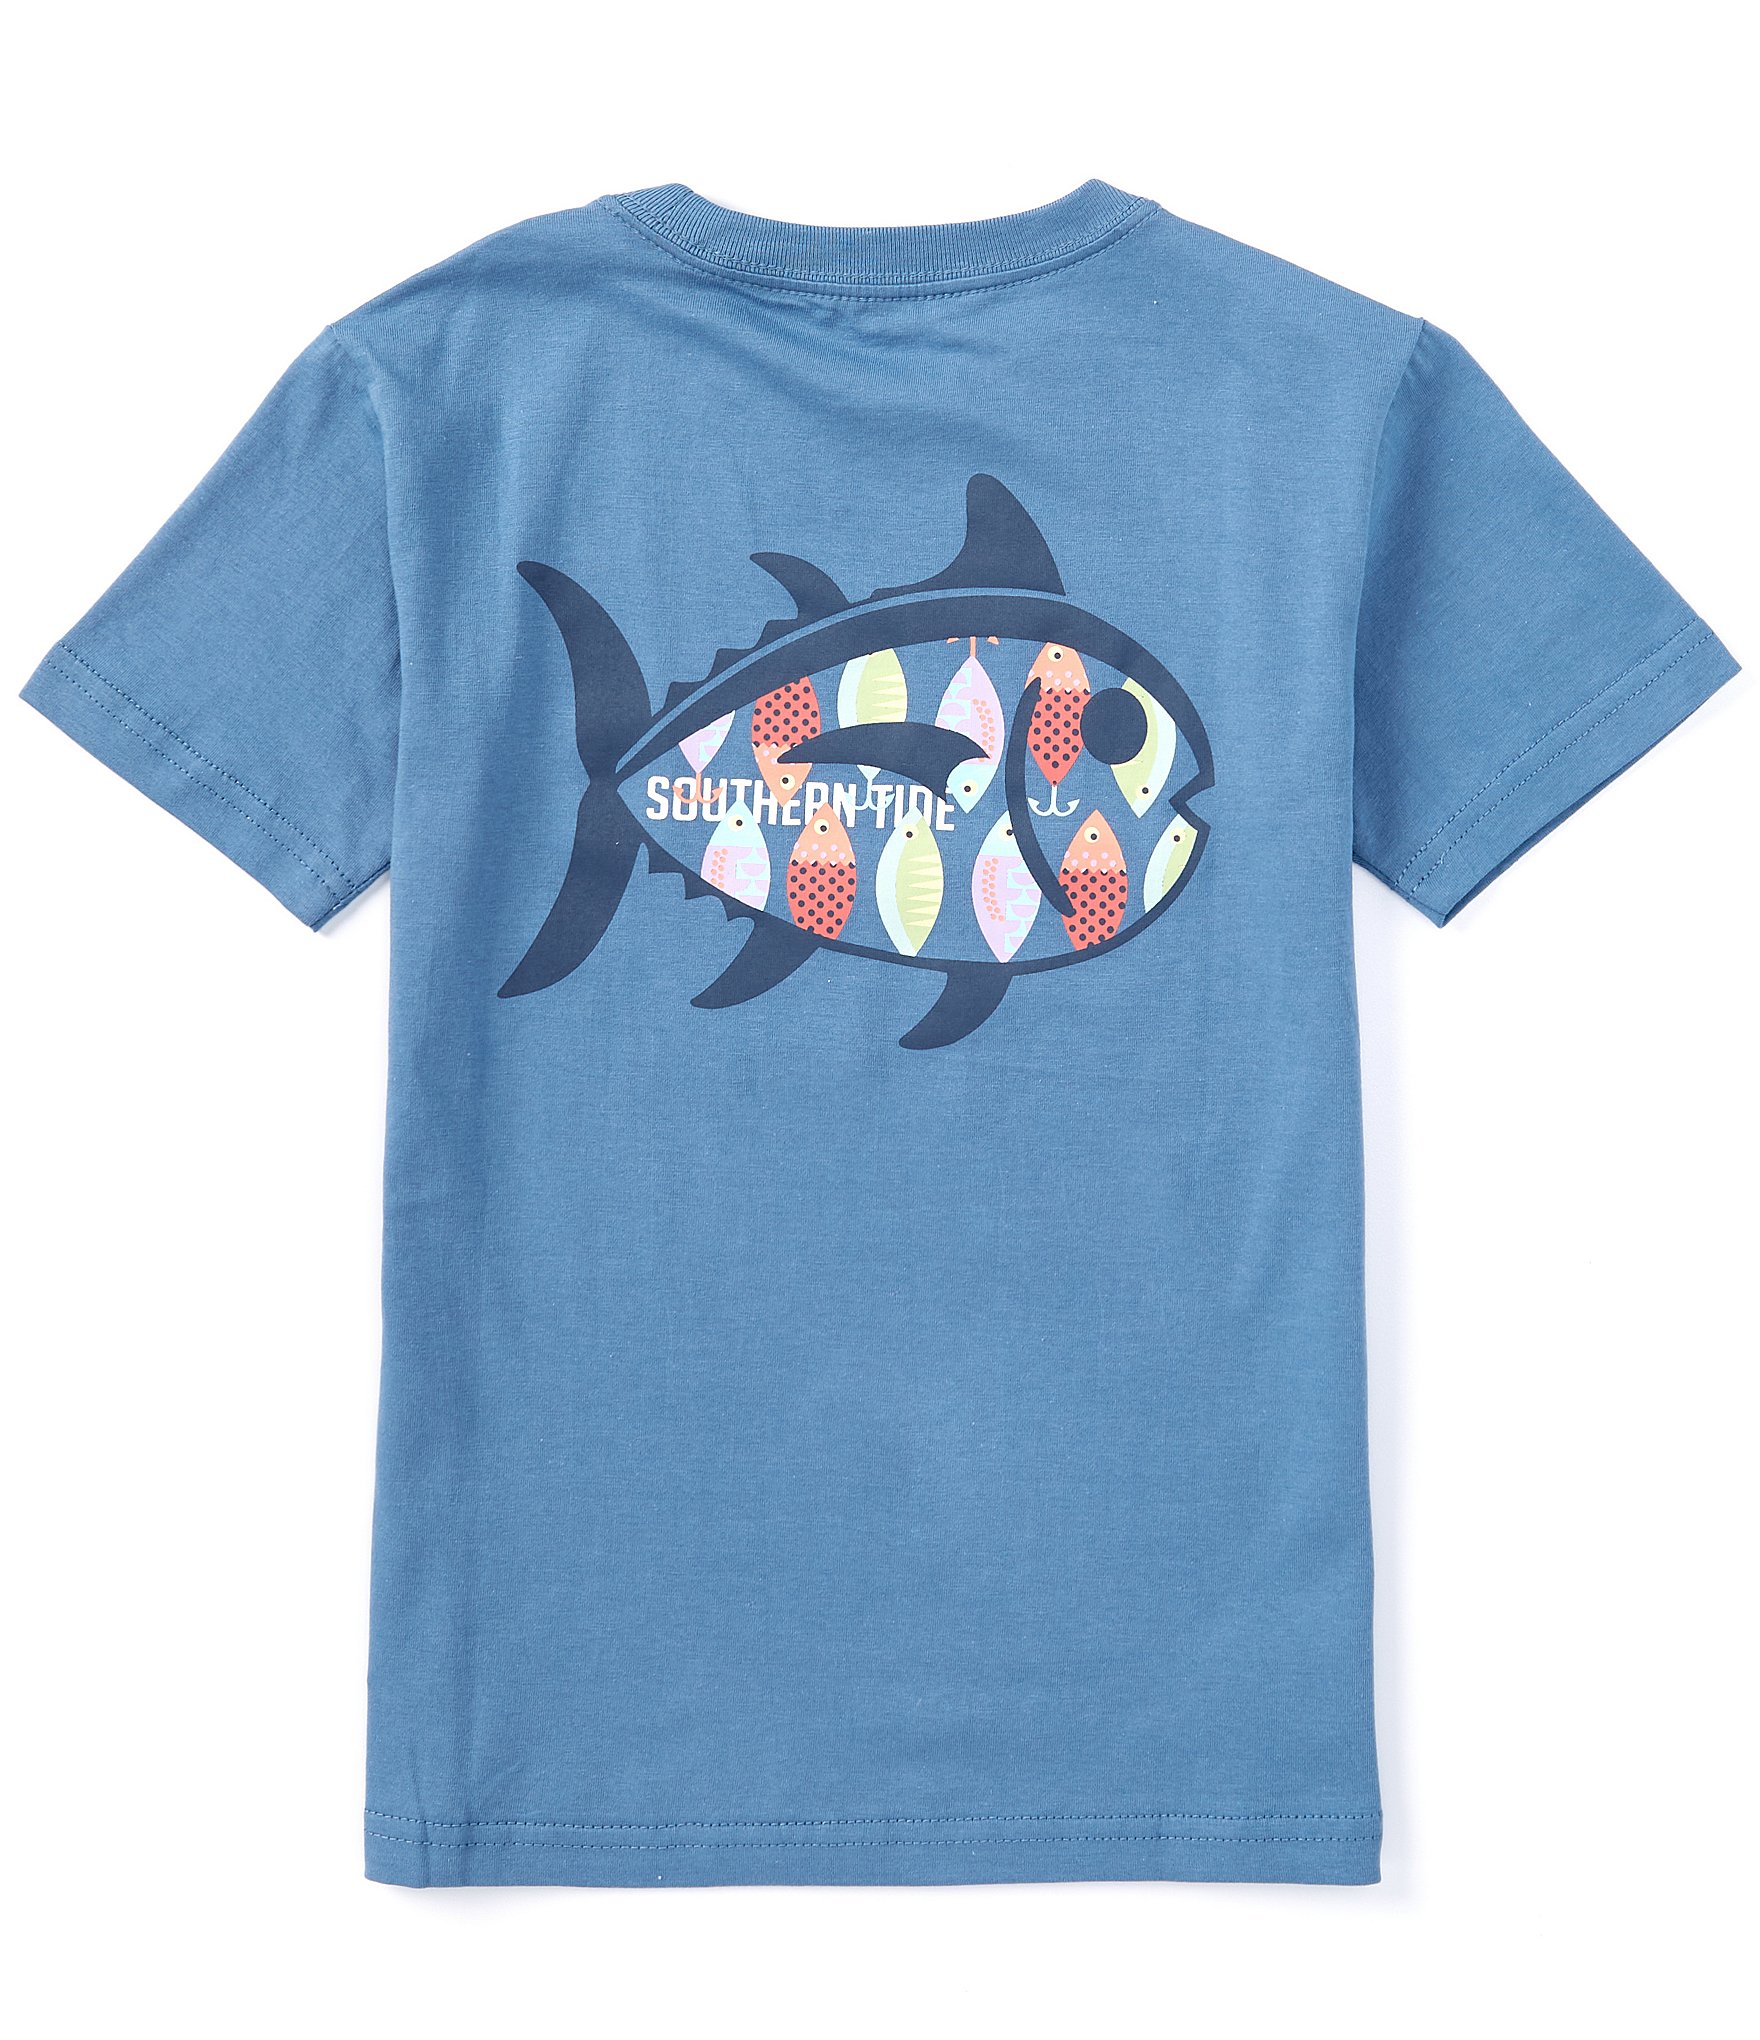 Fishing T-Shirt. California Fish Tee by Worn Free. Small / White / Kids